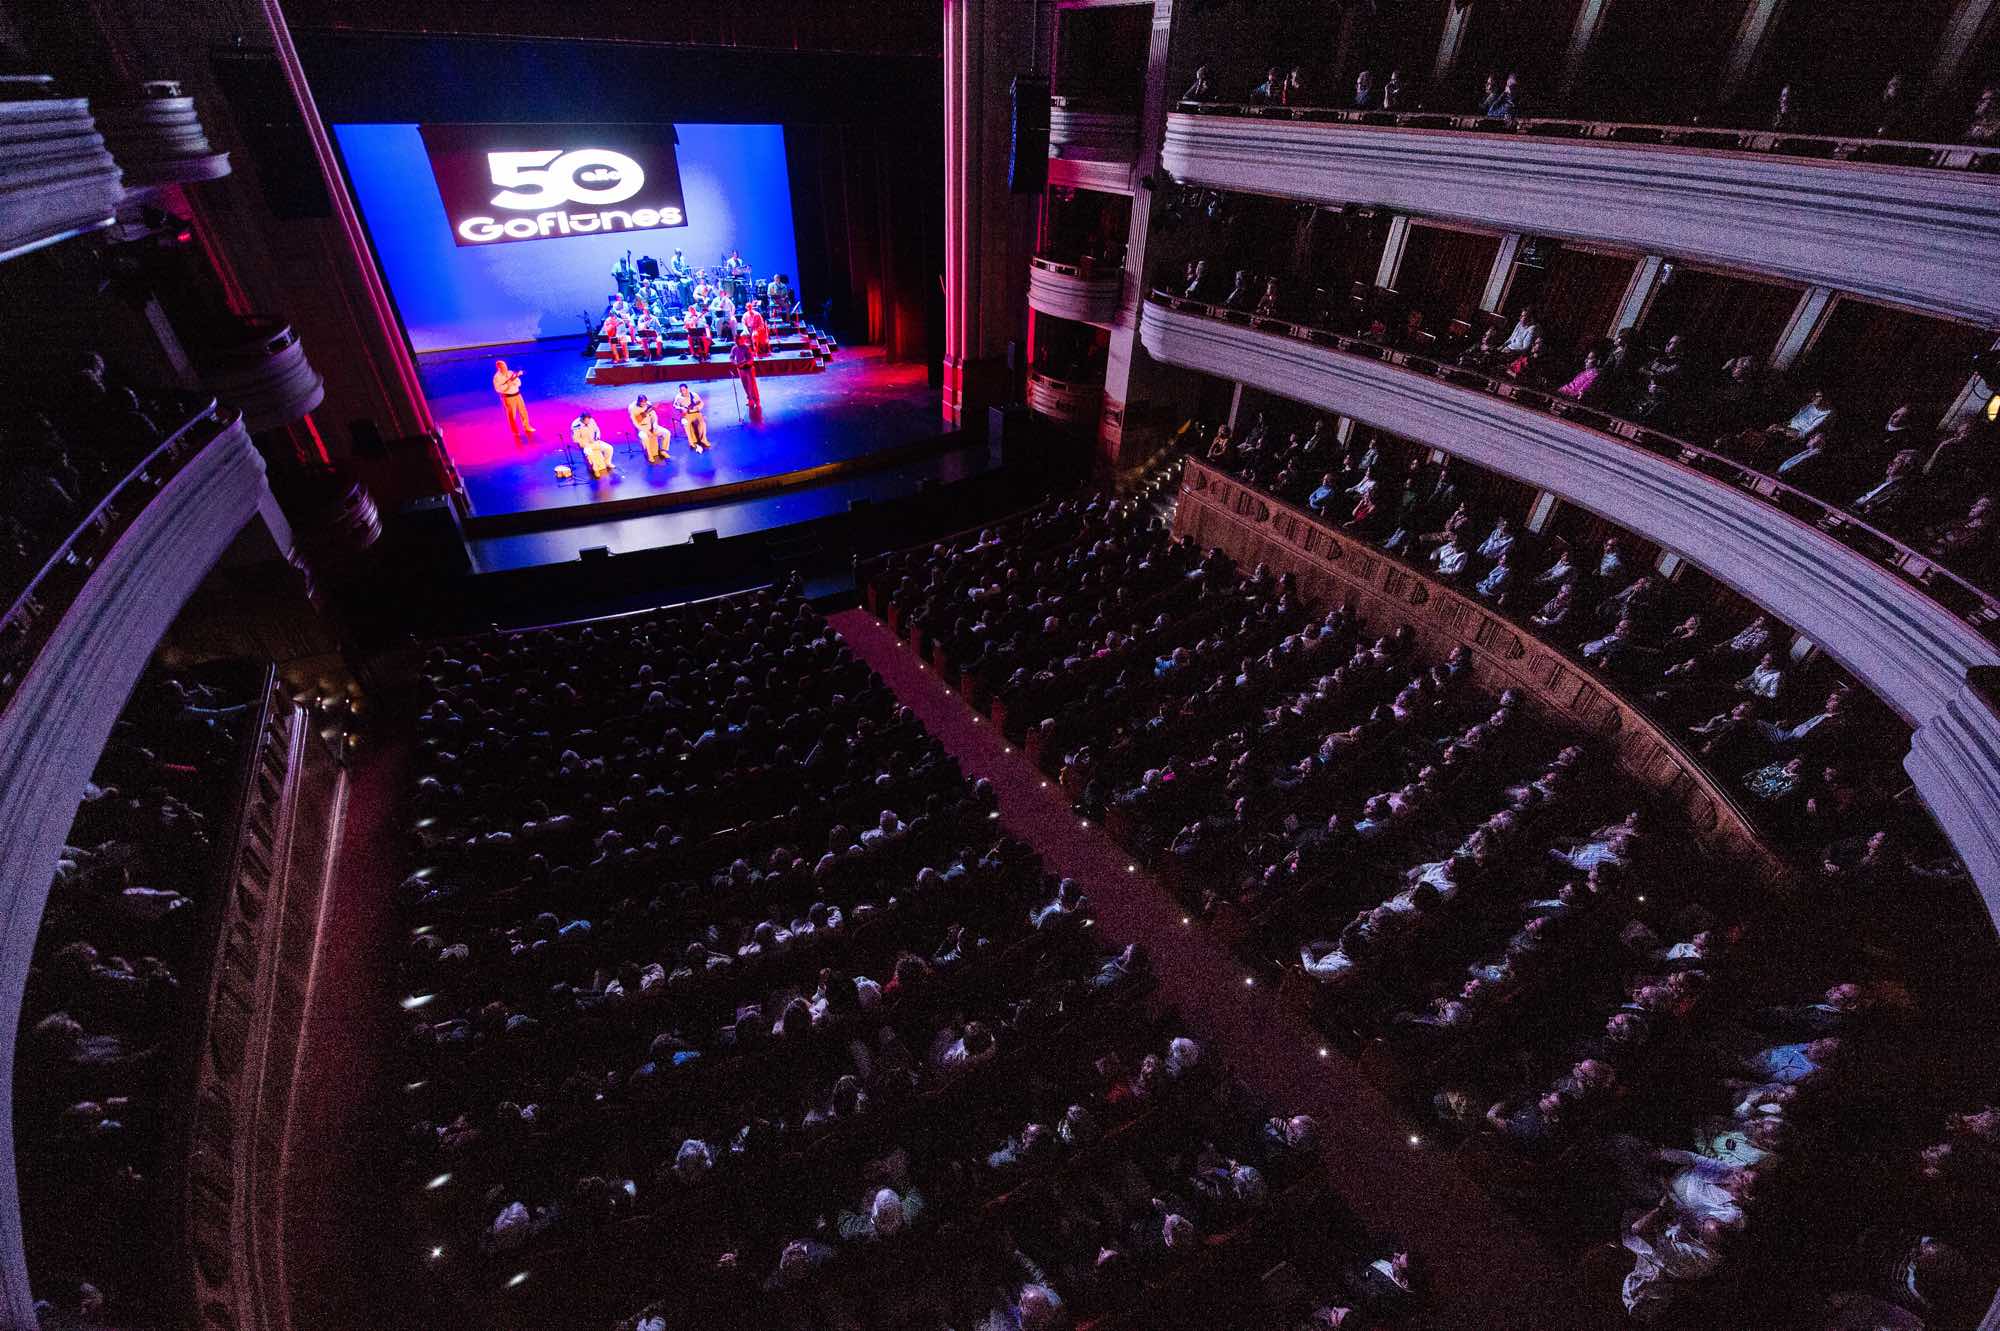 Imágenes del espectáculo "50 años por ti", celebrado entre el 21 y 25 de marzo en el Teatro Pérez Galdós.